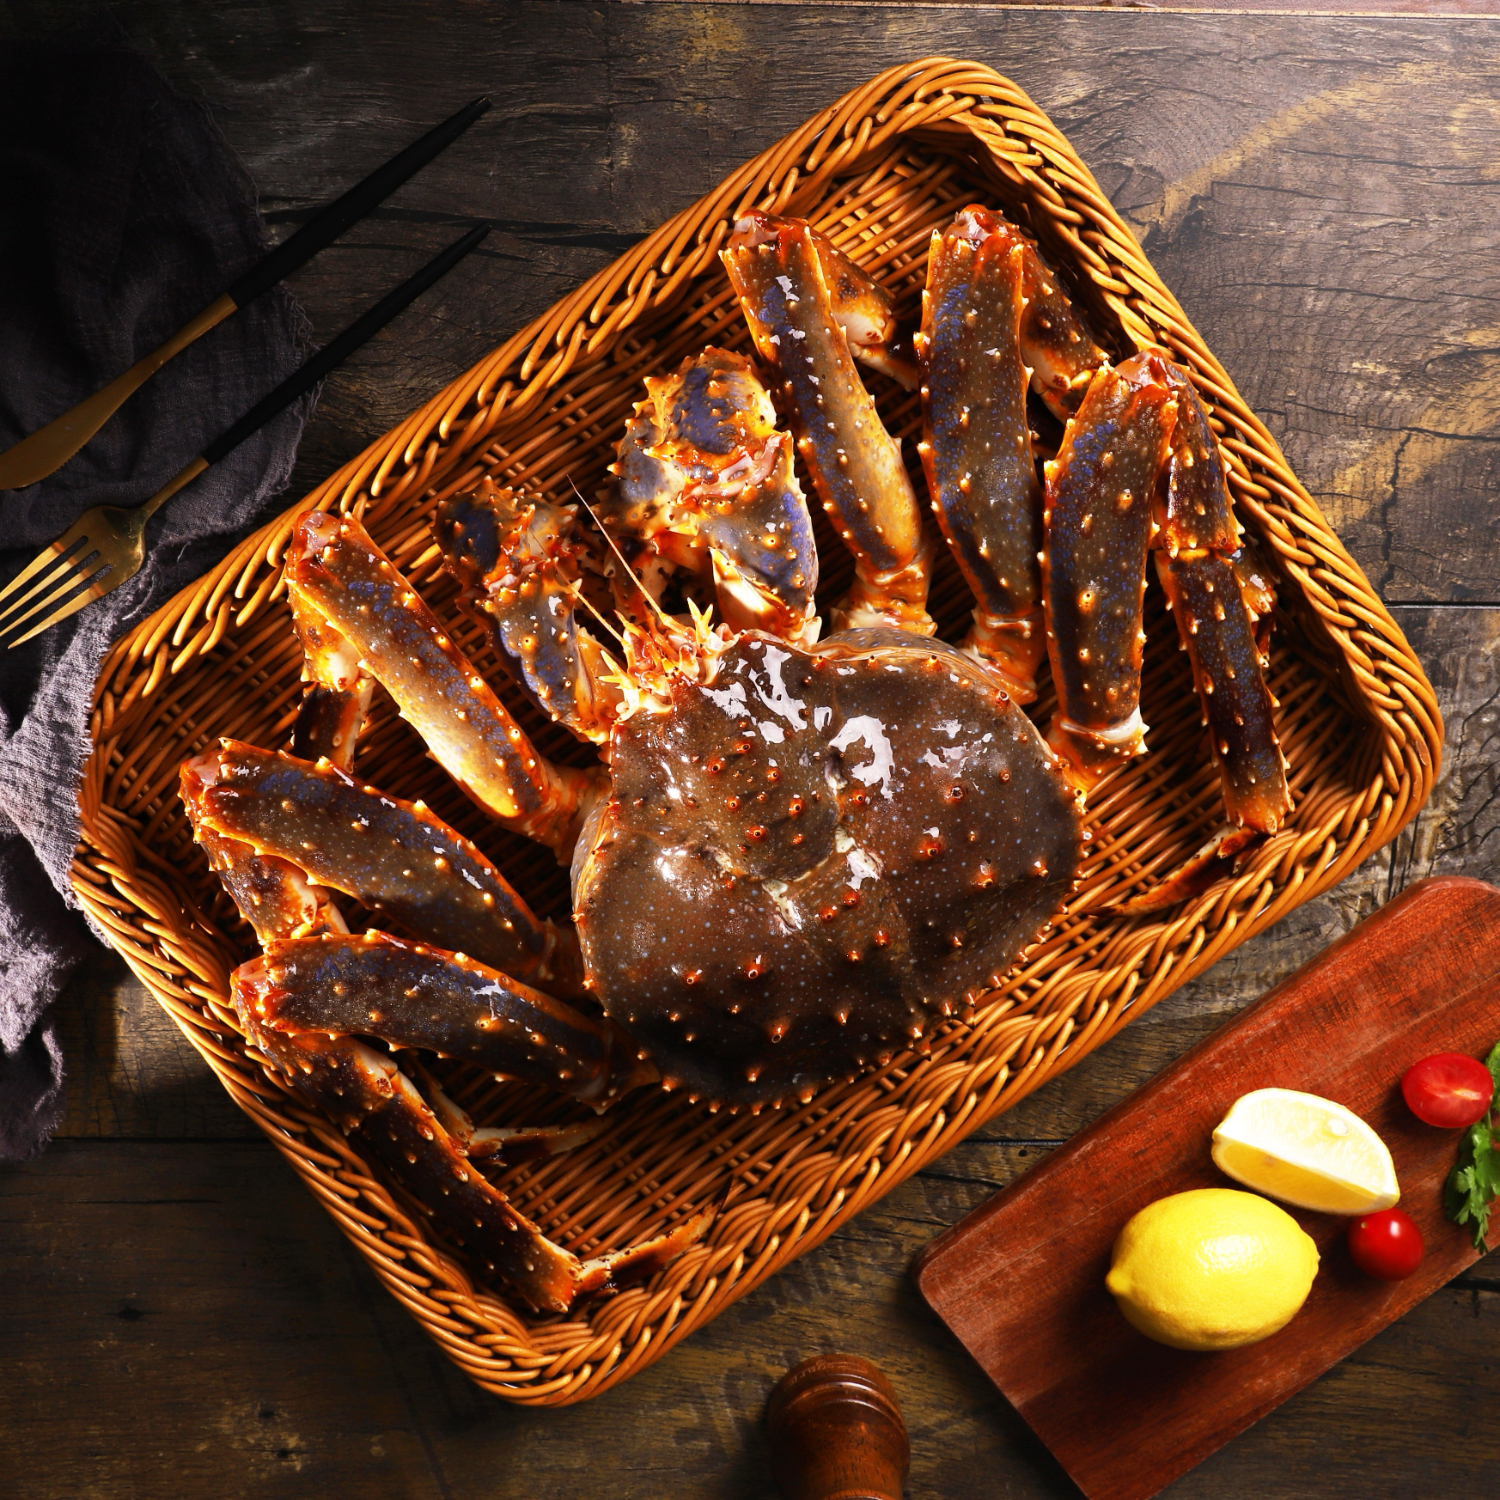 阿拉斯加帝王蟹鲜活冷冻生鲜大螃蟹蟹类生鲜海鲜礼盒俄罗斯 帝王蟹【4.2-4.7斤/只 实惠款】